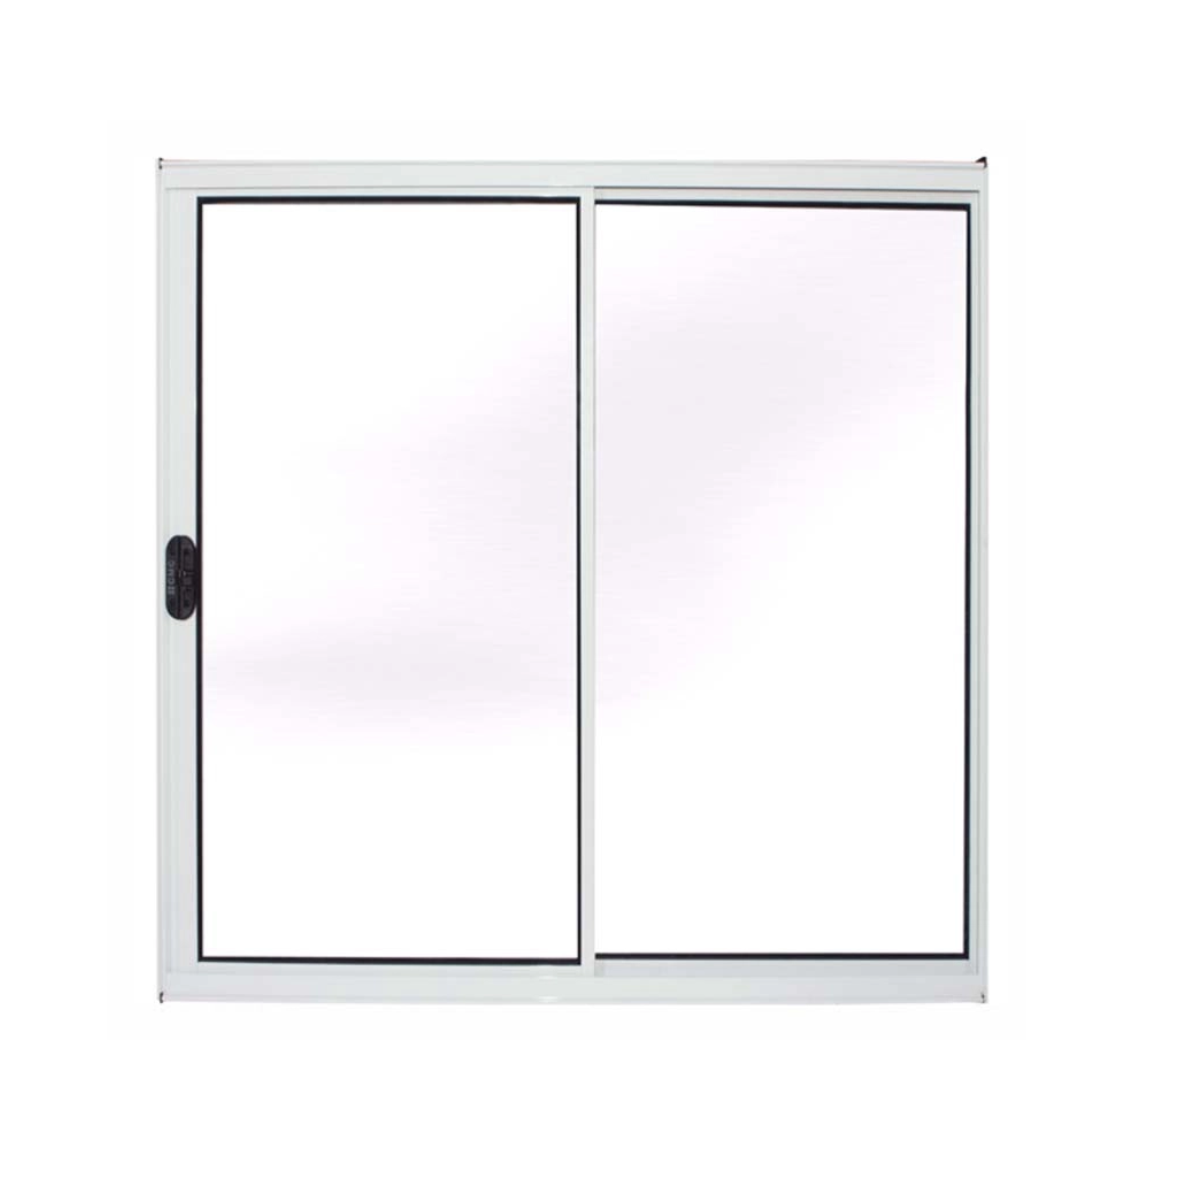 janela vitro sala alumínio branco 100x150 s/grade 2fls - 2